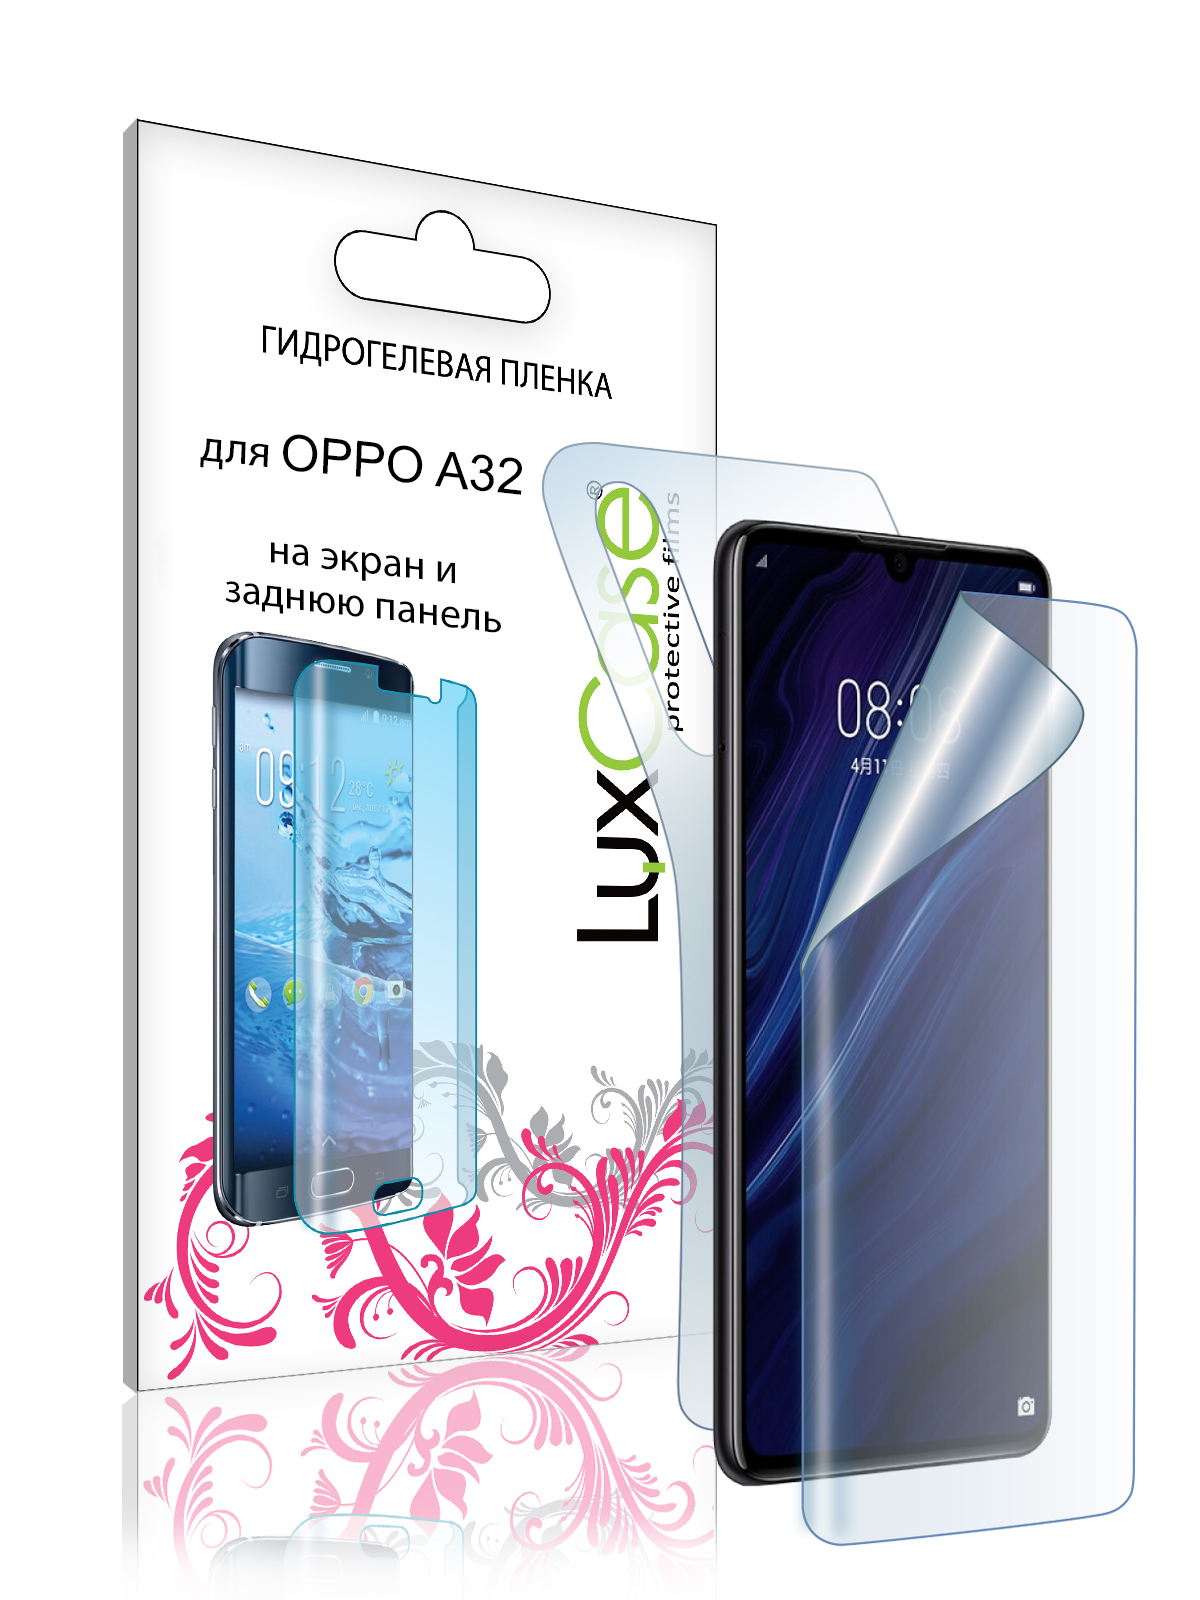 Гидрогелевая пленка LuxCase для Oppo A32 0.14mm Front and Back Transparent 86979 гидрогелевая защитная пленка на заднюю панель для iphone 6 6s глянцевая